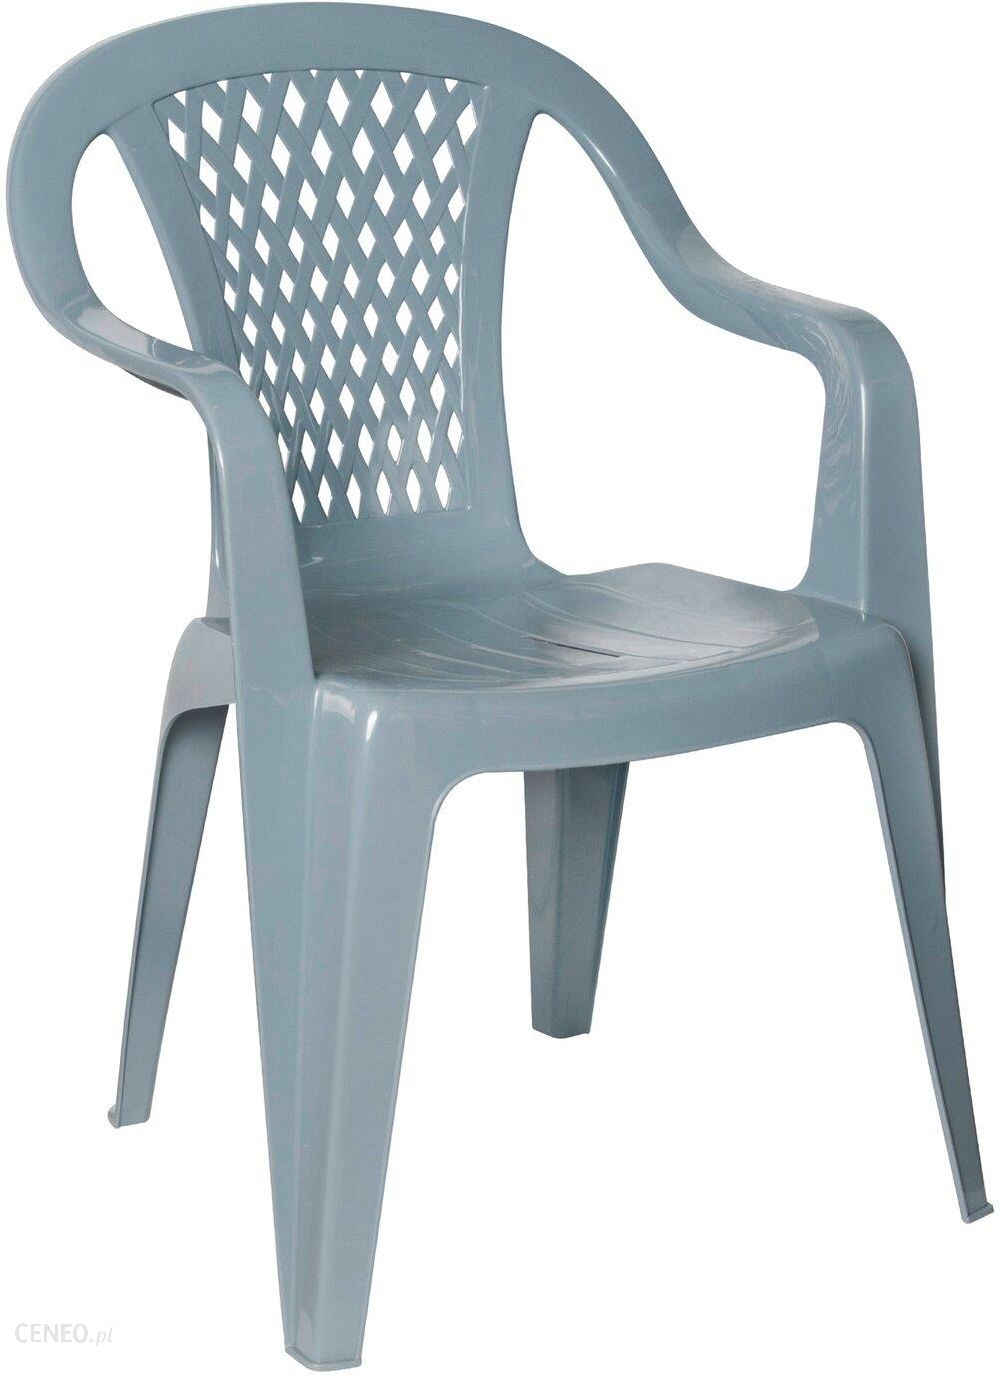 Krzeslo Ogrodowe Obi Krzeslo Diament Szare Ceny I Opinie Ceneo Pl